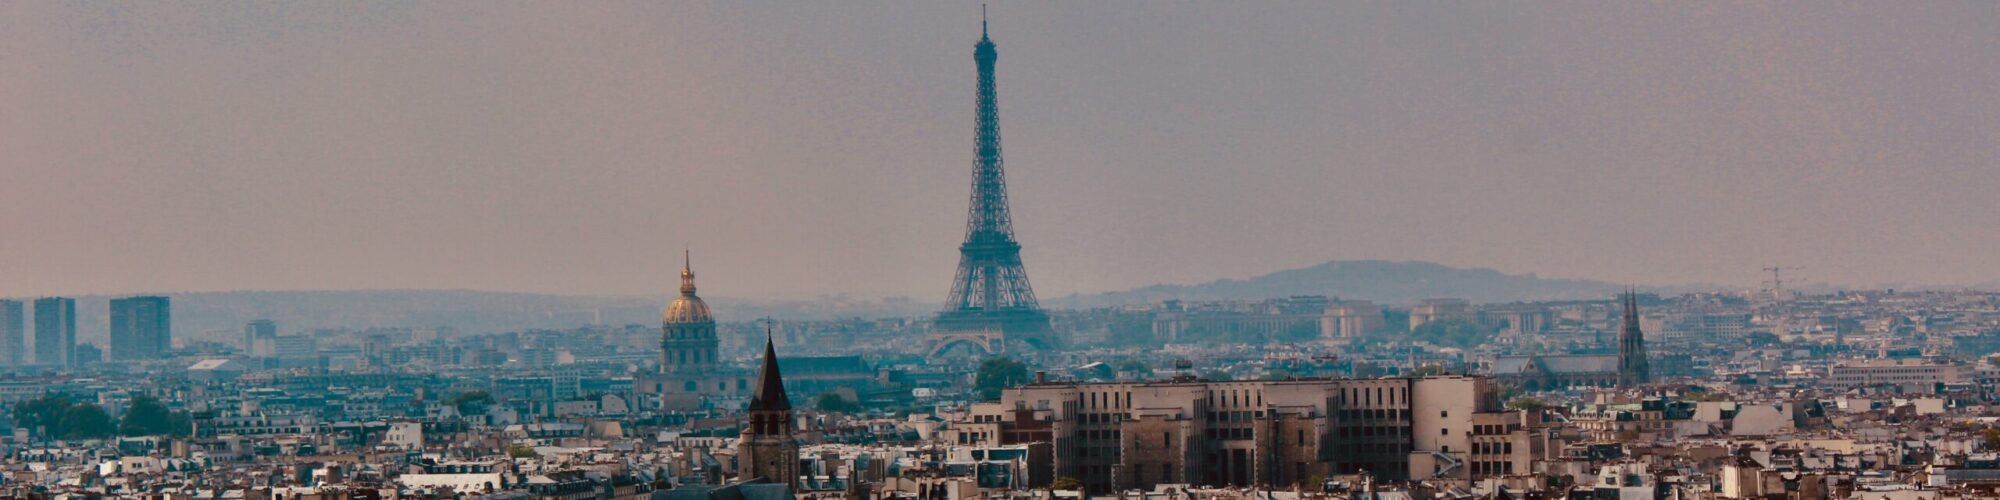 4 nap párizsban program, belépőjegyek párizs, legjobb látnivalók párizsban, párizs, párizs éttermek, párizs hasznos információk, párizs költőpénz, párizs látnivalók, Párizs látnivalók utazómajom, párizs tömegközlekedés, Párizs utazás, Párizs utikritika, szállás Párizs, utazás párizsba, párizs költségek, párizs időjárás, Párizs ingyenes látnivalók, Párizs látnivalók pdf, Párizs különleges látnivalók, párizs repülőjegy, Párizs látnivalók 3 nap alatt, párizs árak, párizs közbiztonság